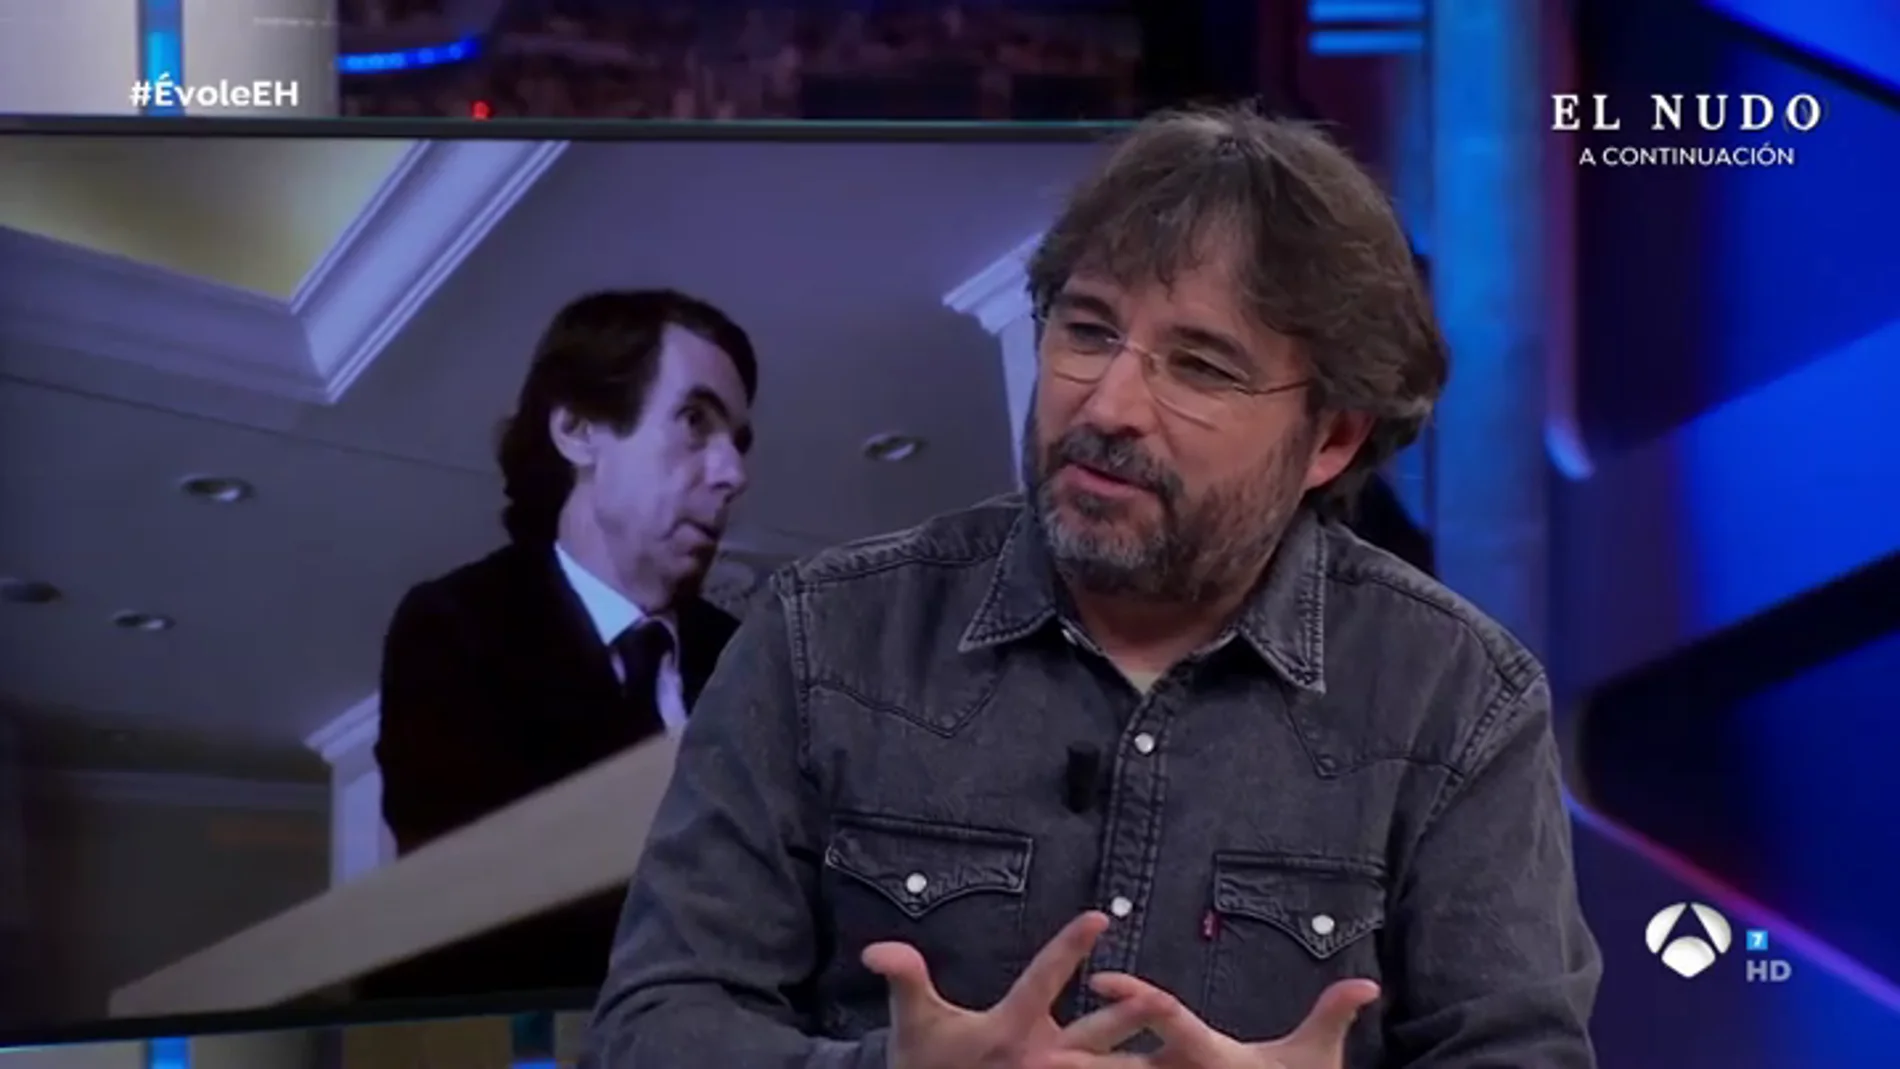 Évole desvela los entresijos de su entrevista a Aznar: "Hay momentos de tensión, pero están bien llevados"